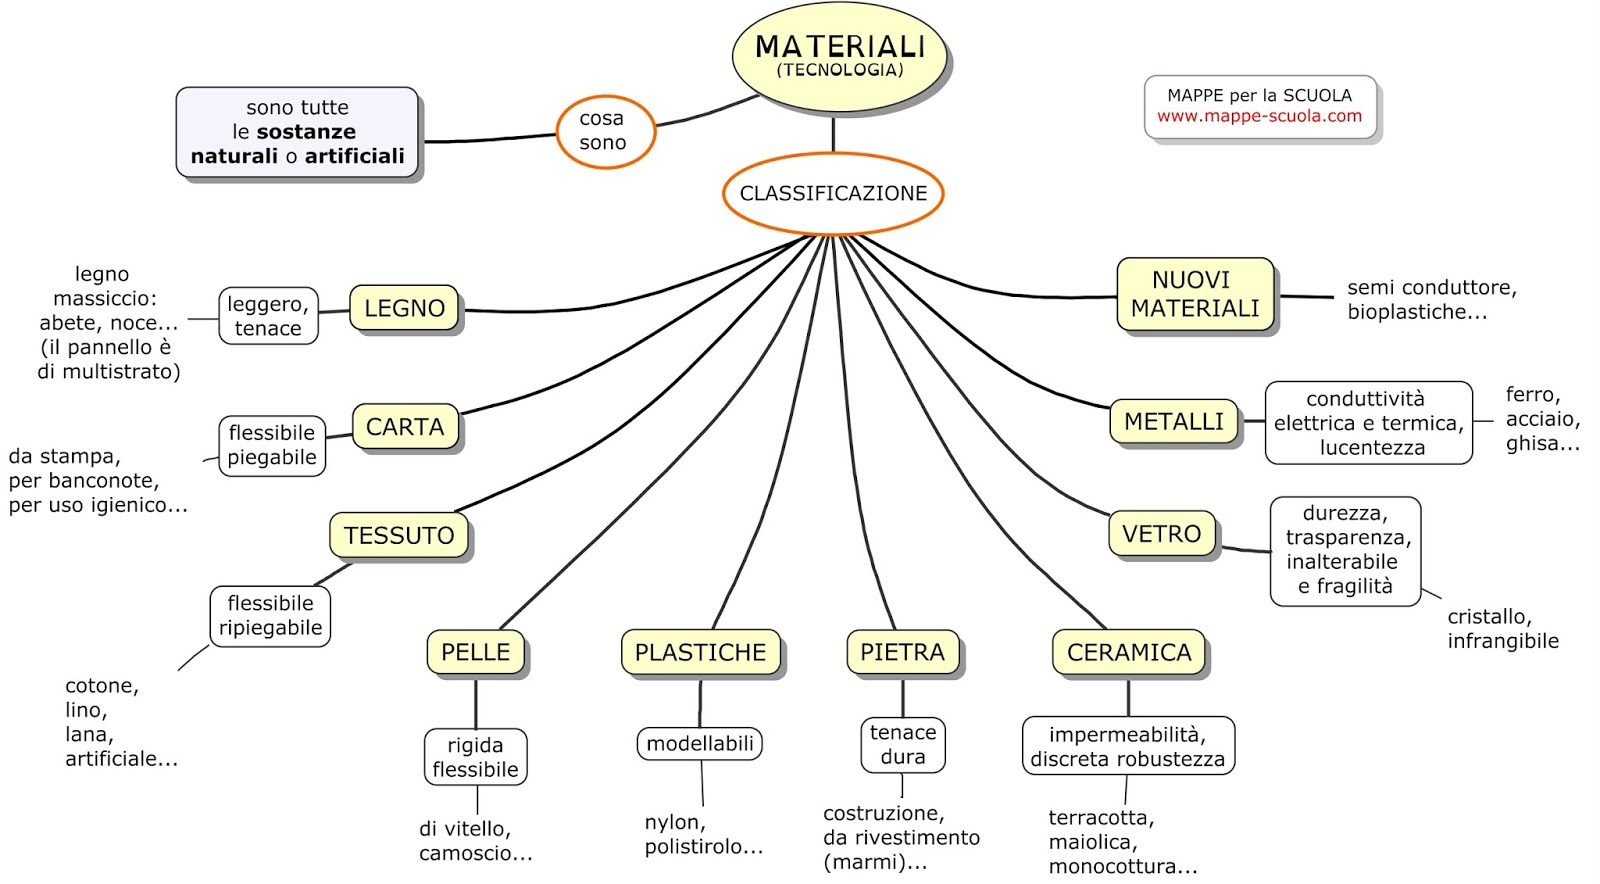 Quali sono i materiali comuni utilizzati nella fabbricazione?